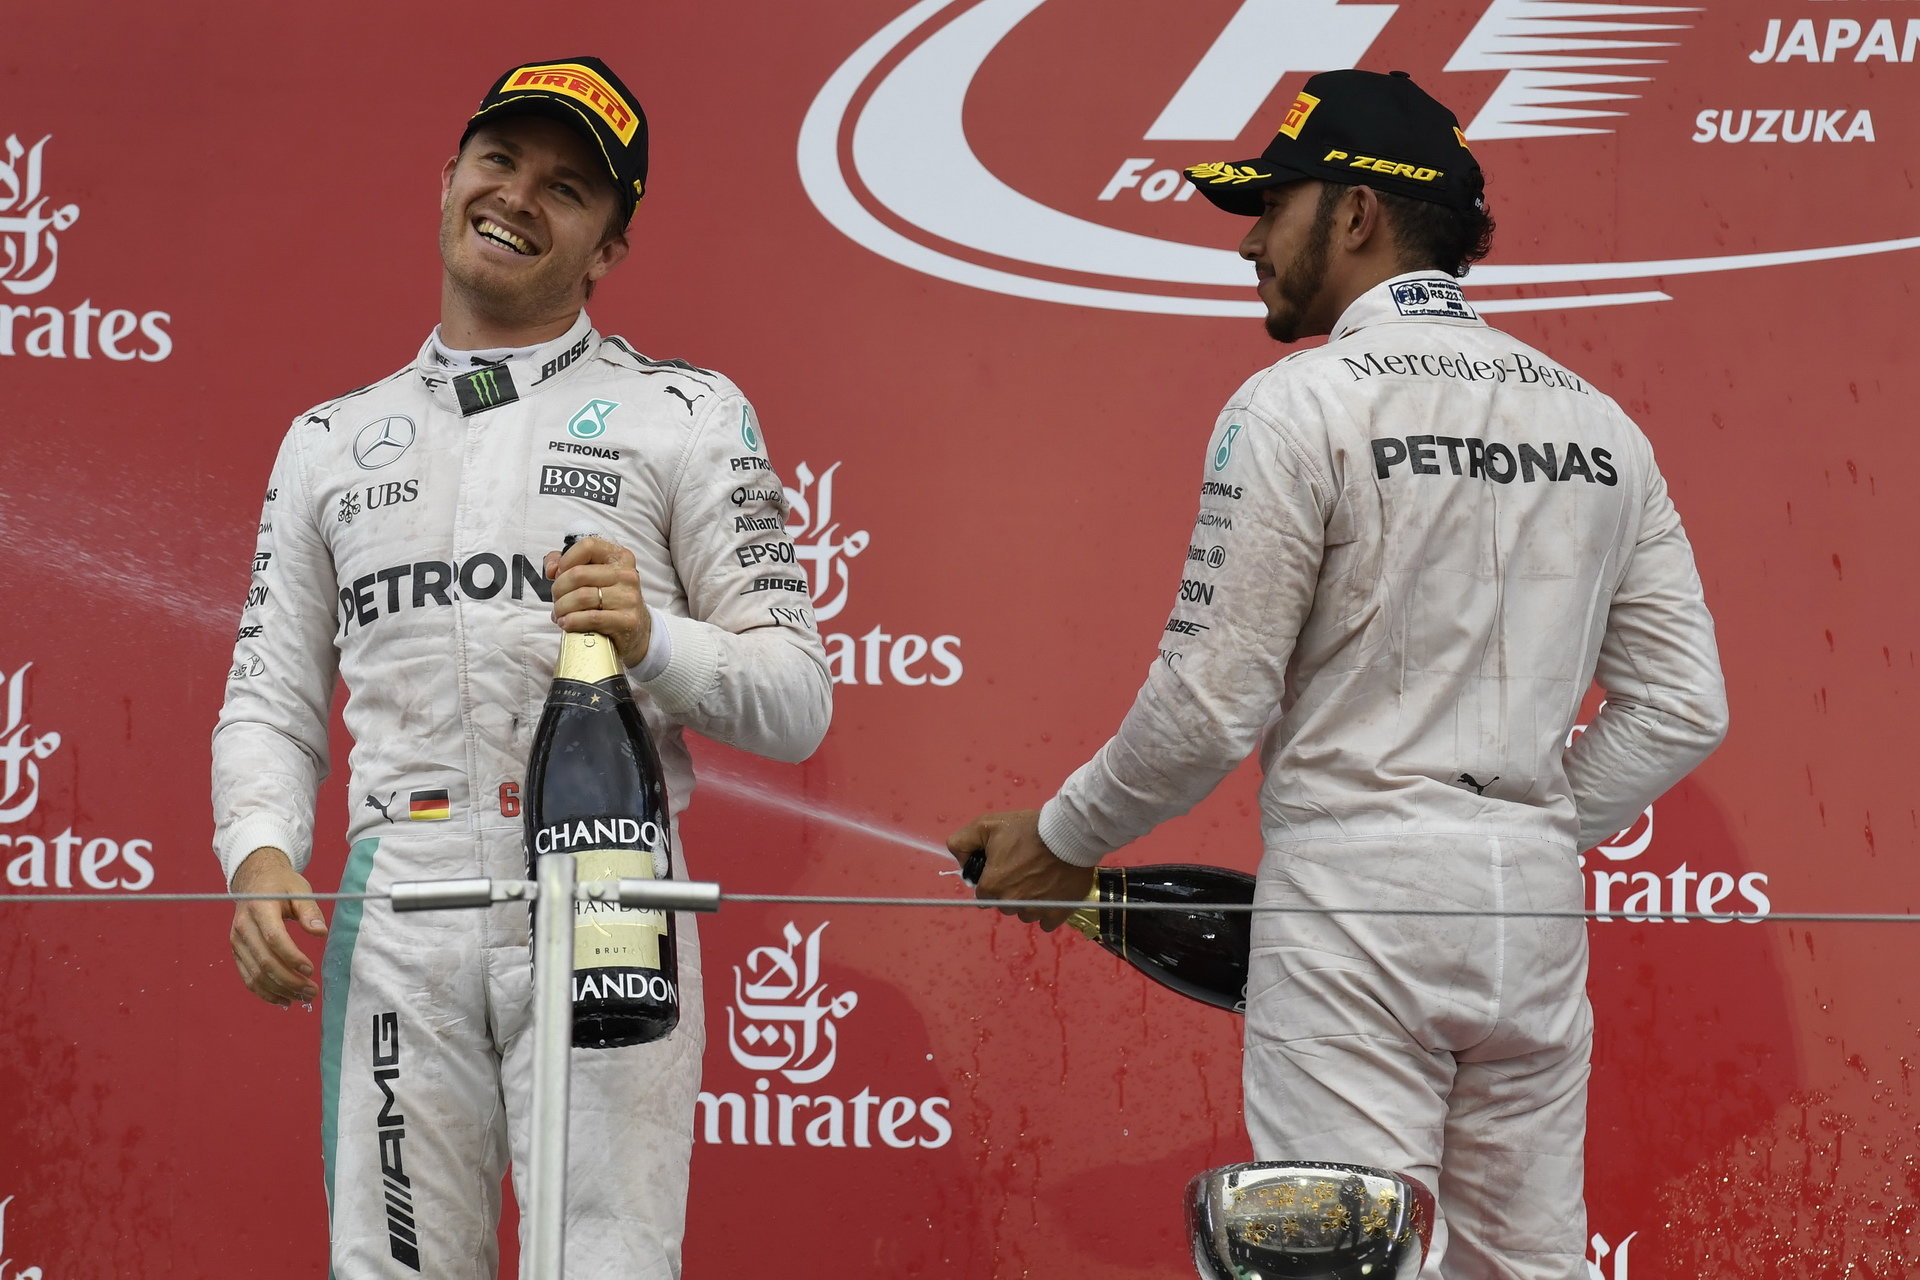 Nico Rosberg slaví vítězství, na pódiu ho doprovází Lewis Hamilton